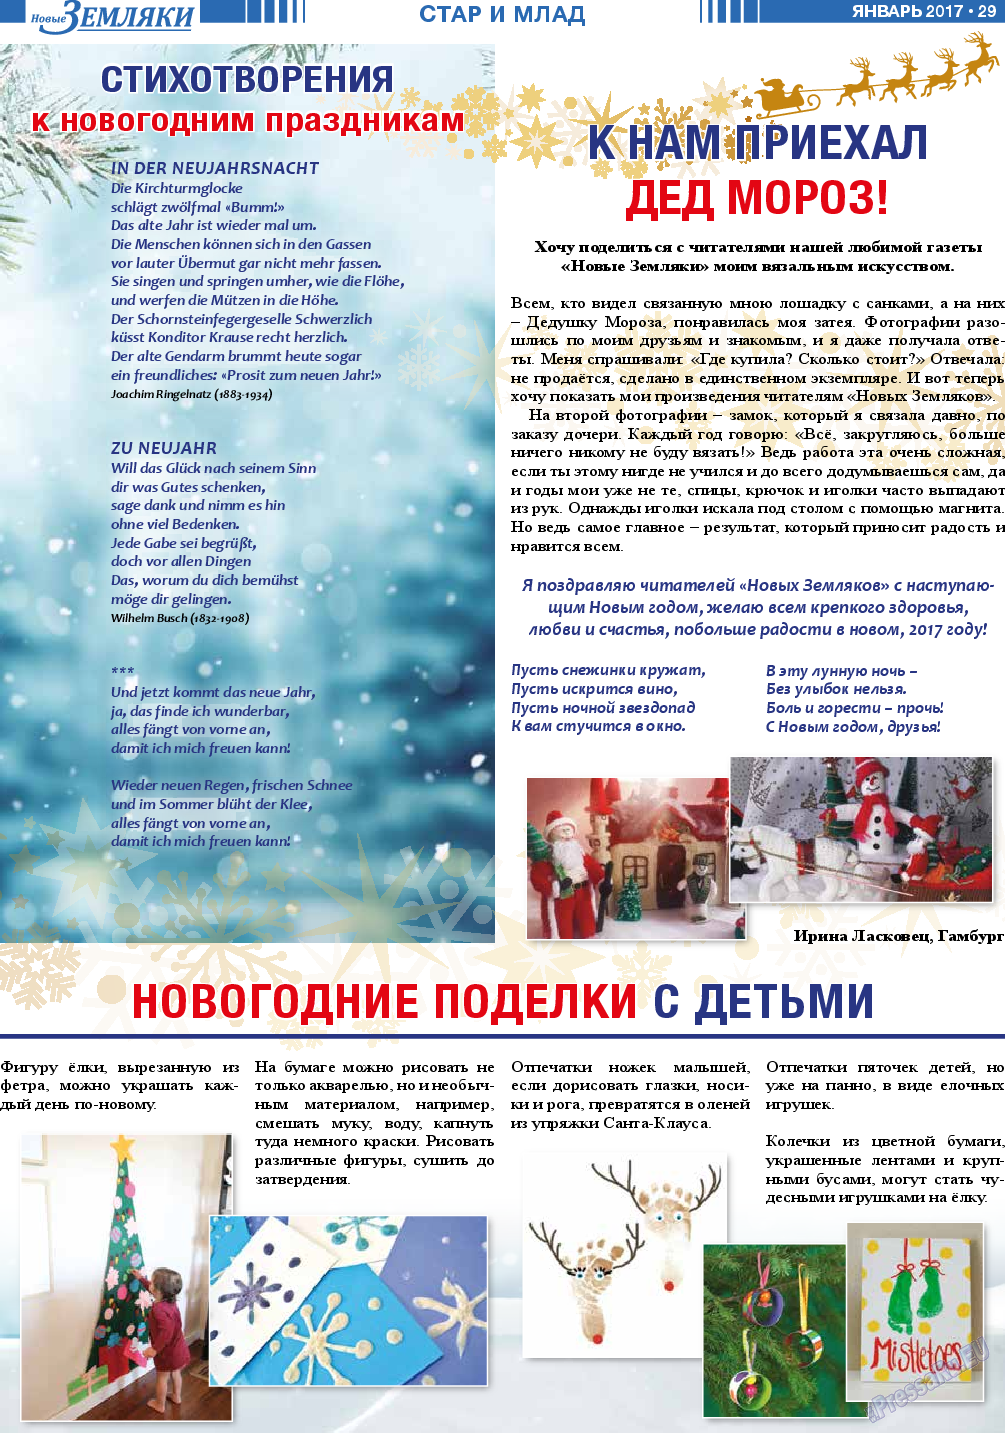 Новые Земляки, газета. 2017 №1 стр.29